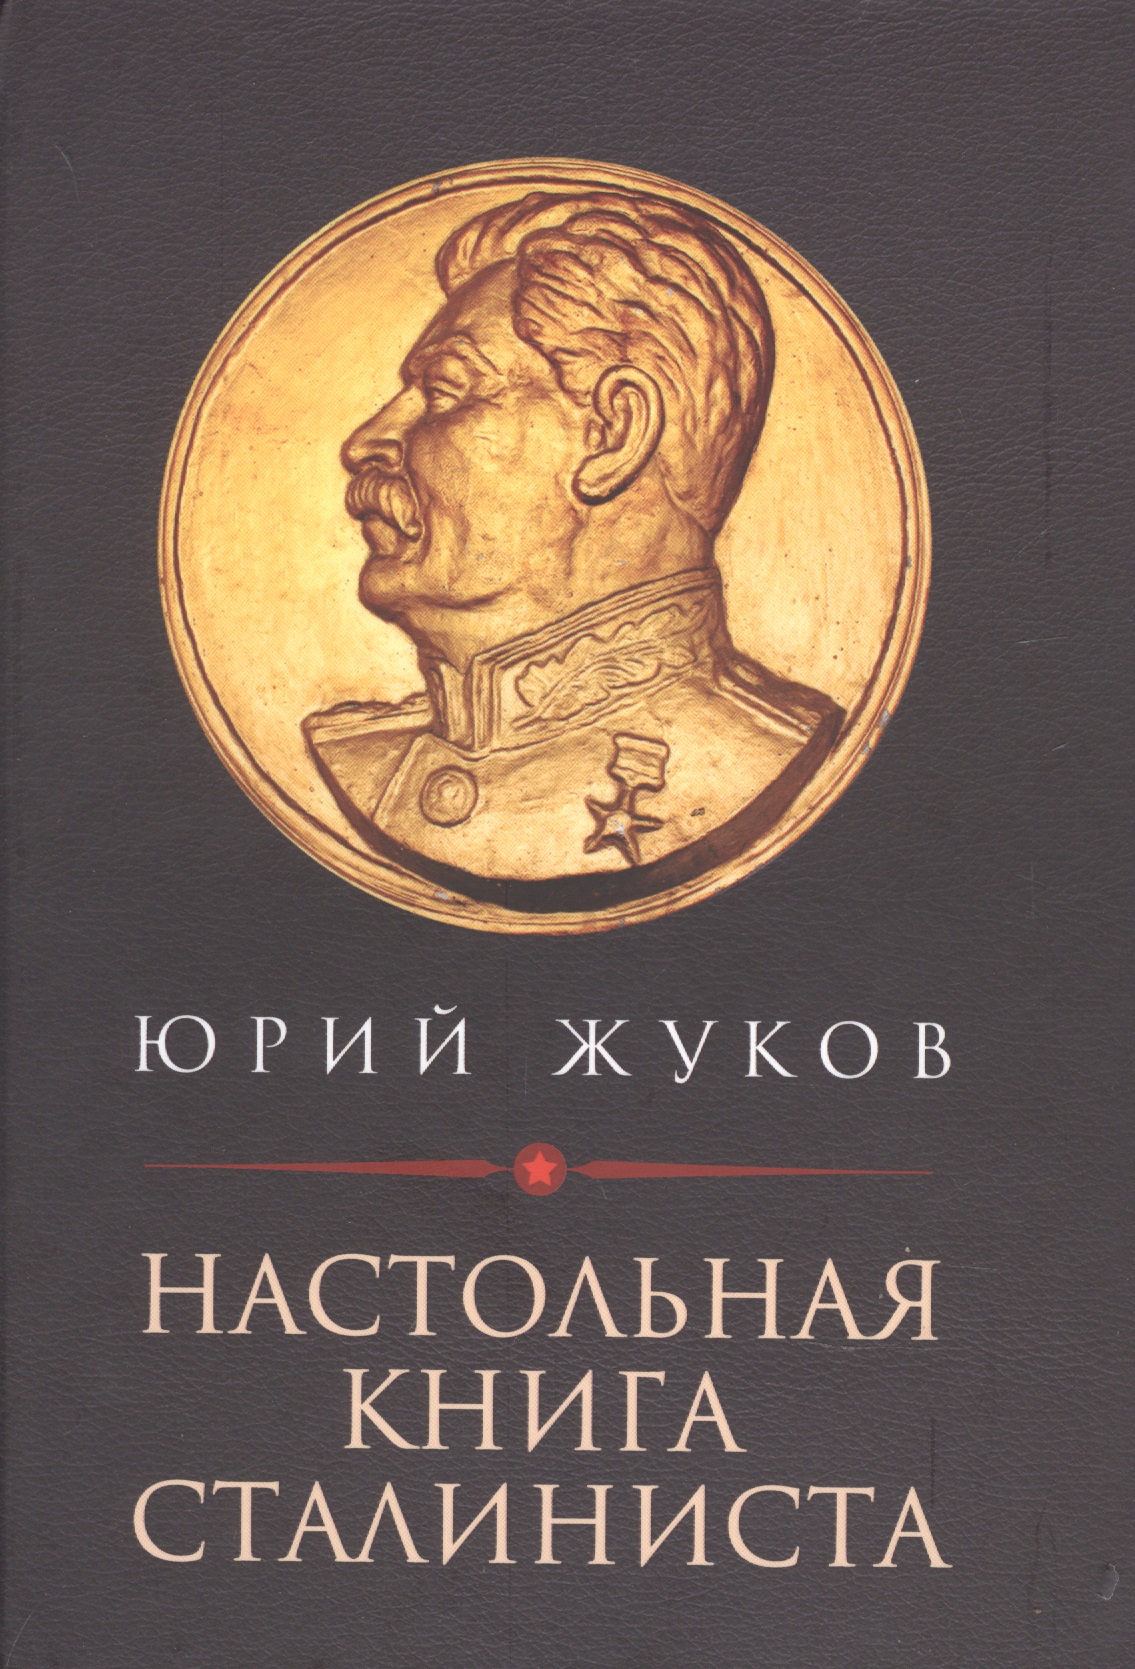 Жуков Юрий Николаевич - Настольная книга сталиниста